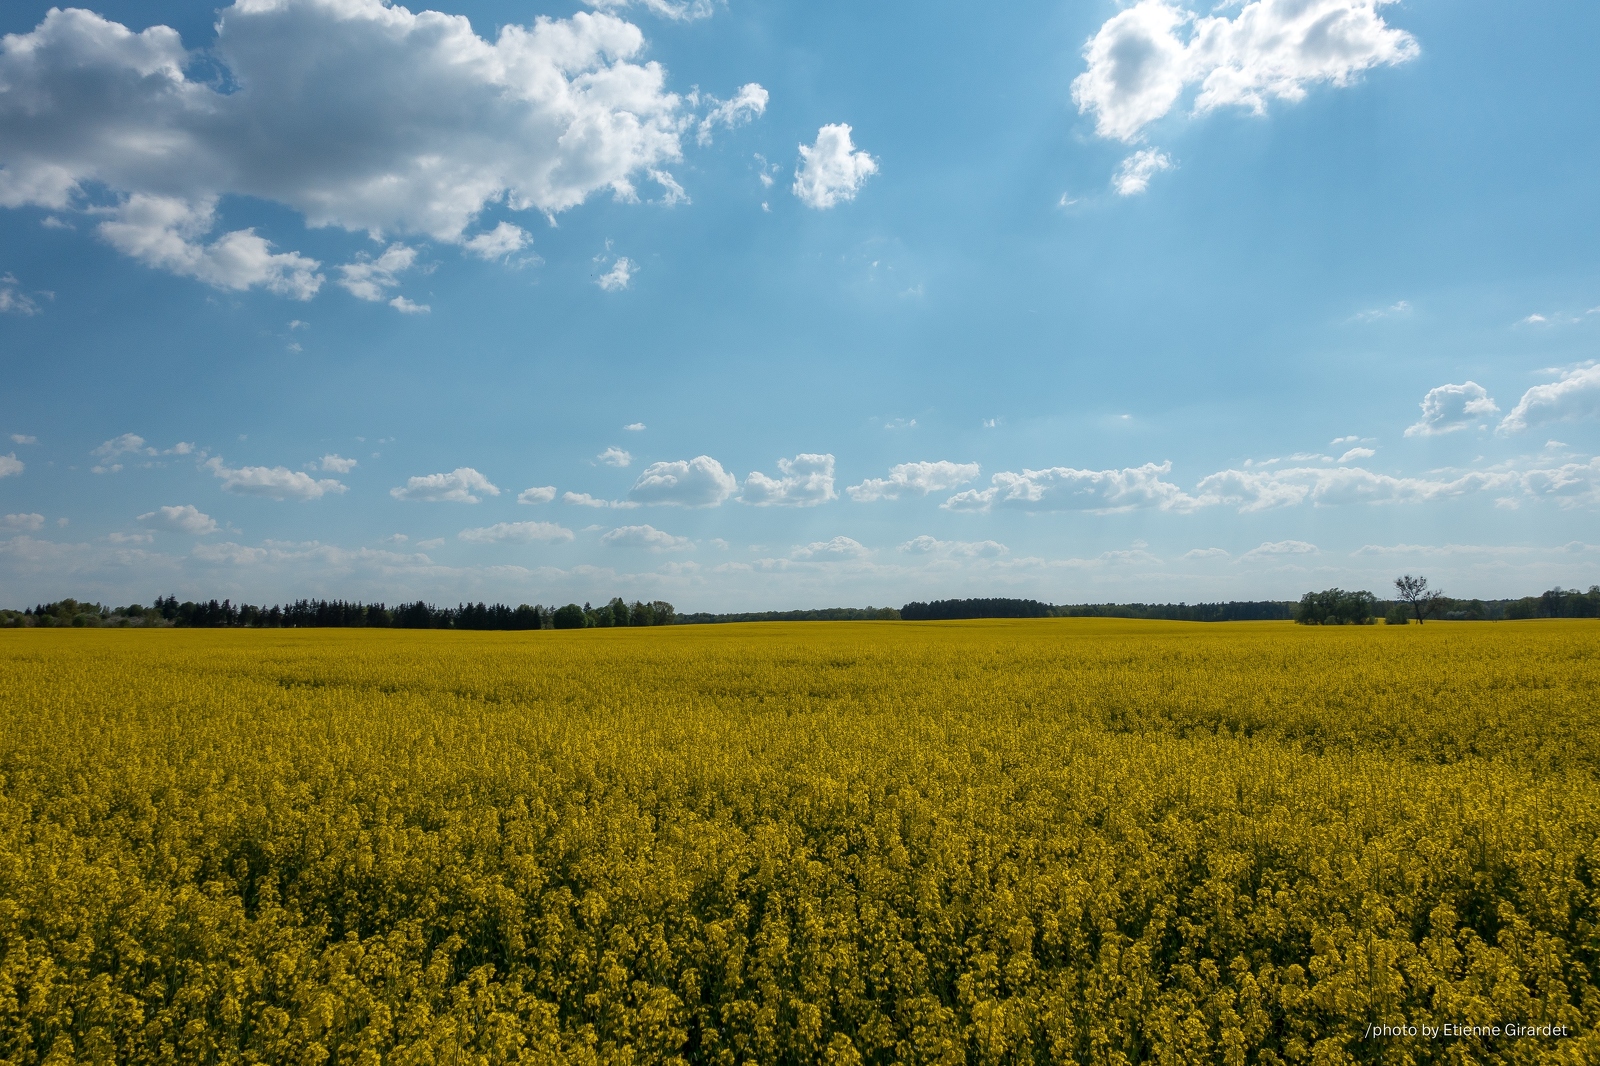 201605_08_DSC07193-yellow-rapeseed-field-blue-sky-by-E-Girardet.jpg